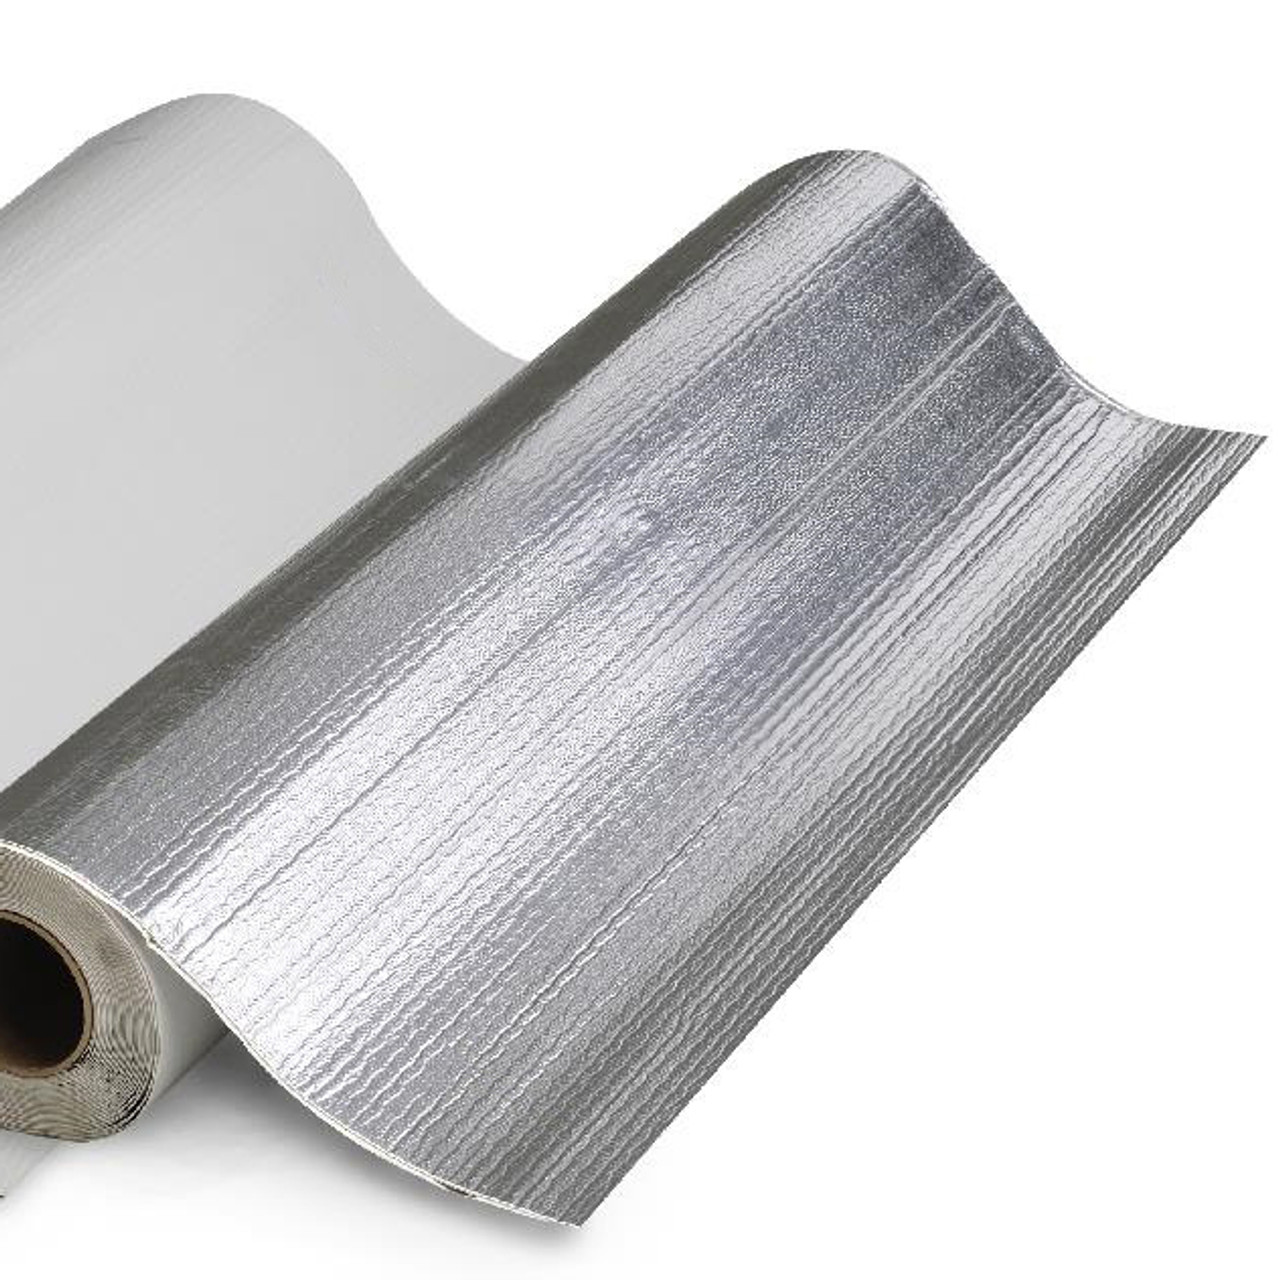 Does Aluminum Foil Set off Metal Detectors